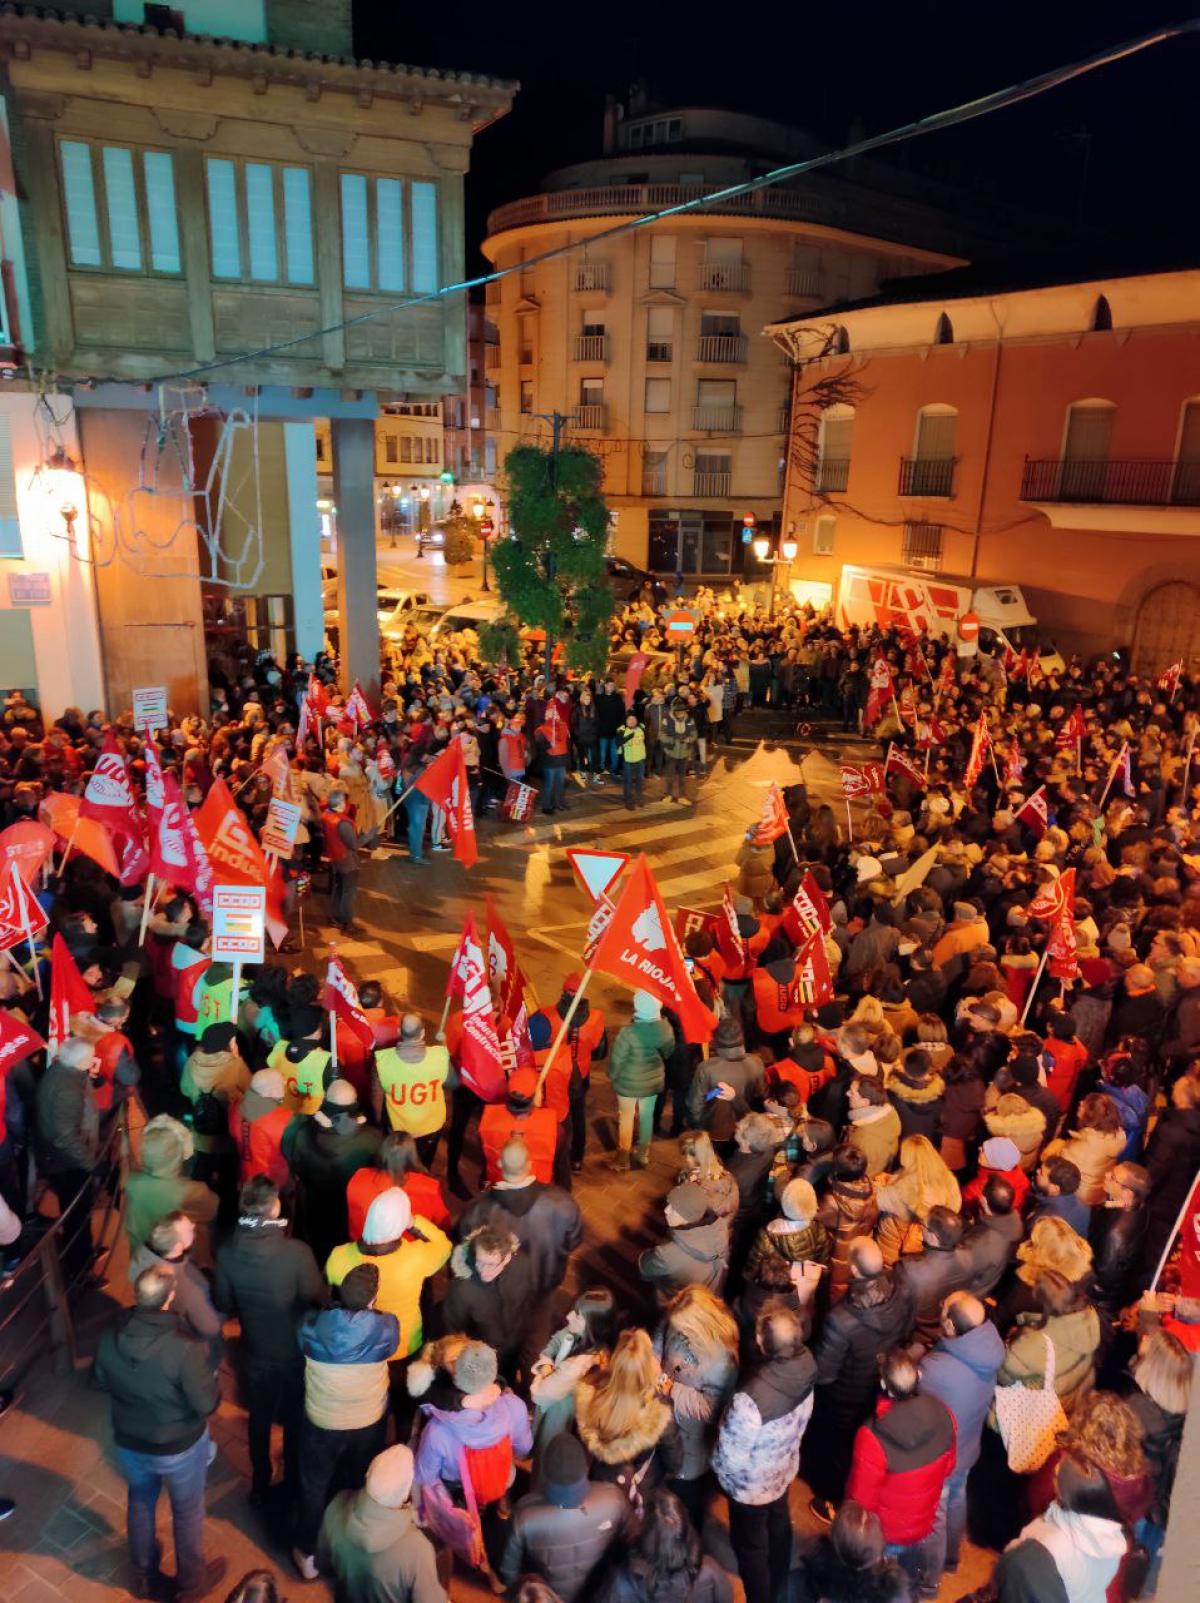 Ayuntamiento de Arnedo , al finalizar la manifestación "Salario o Conflicto" del sector del calzado.